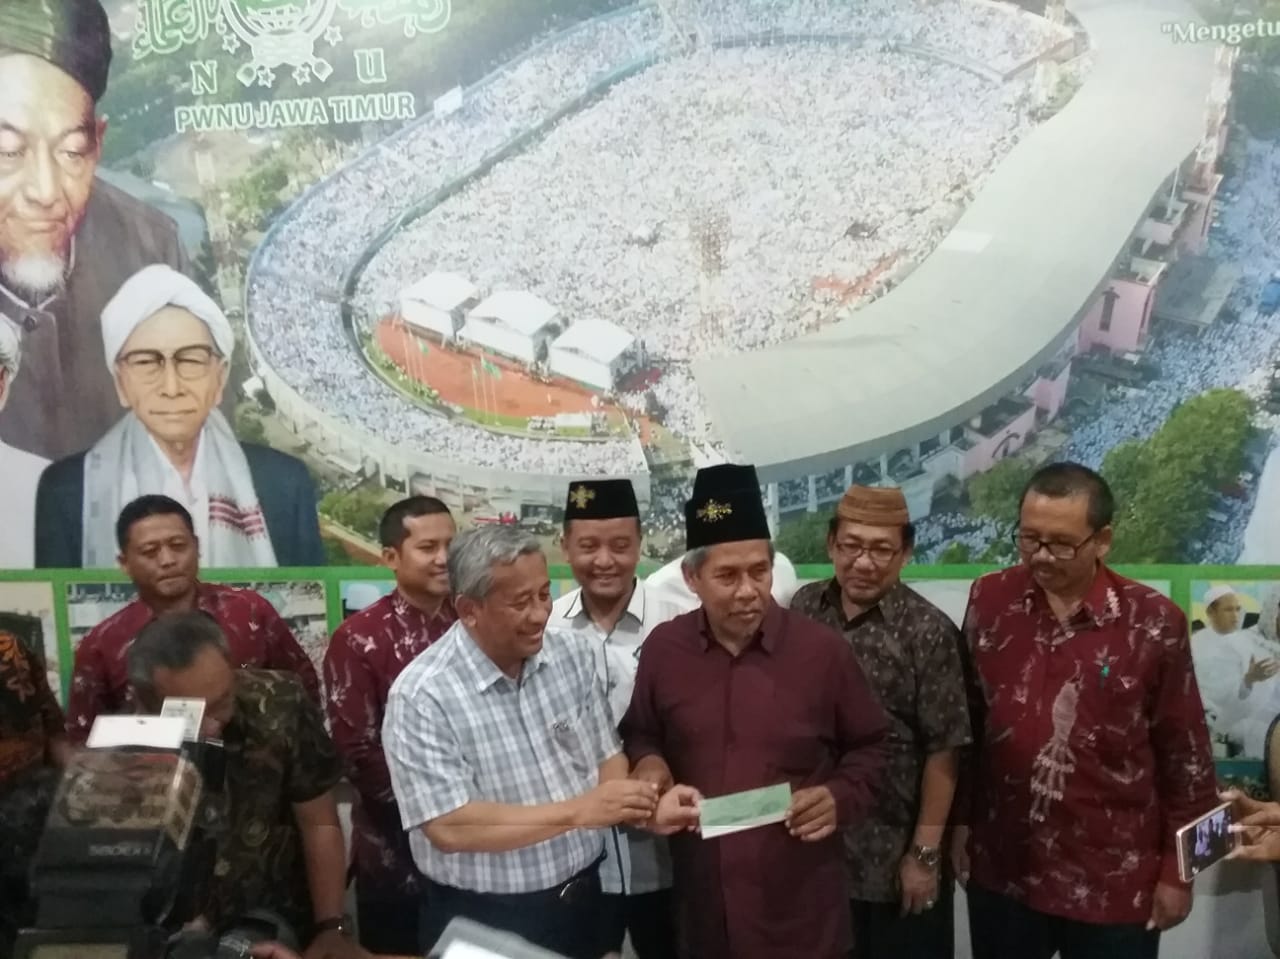 Ketua Yarsis menyalurkan bantuan untuk korban gempa di Lombok melalui PWNU Jatim. 